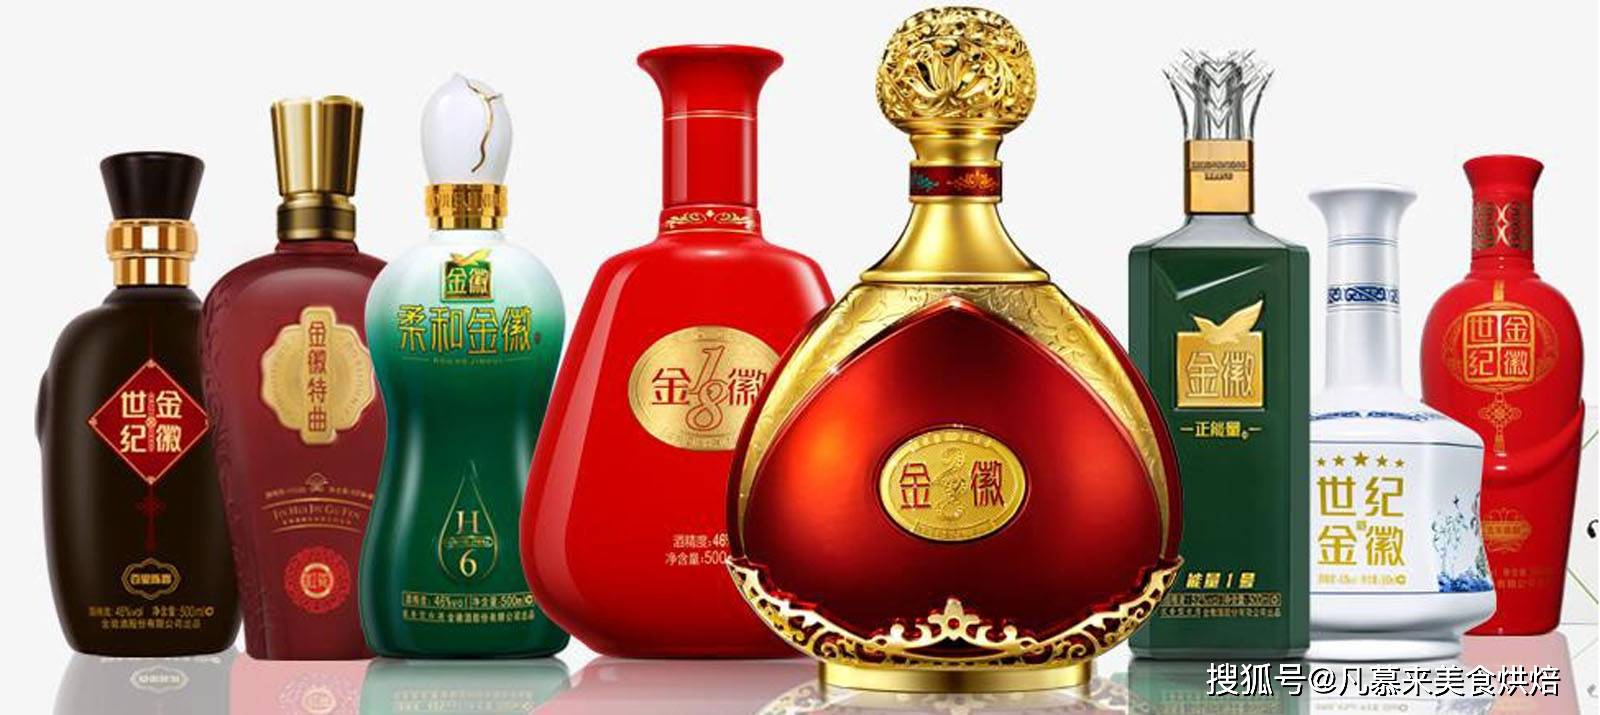 中国酒类大全,中国酒的种类及名酒